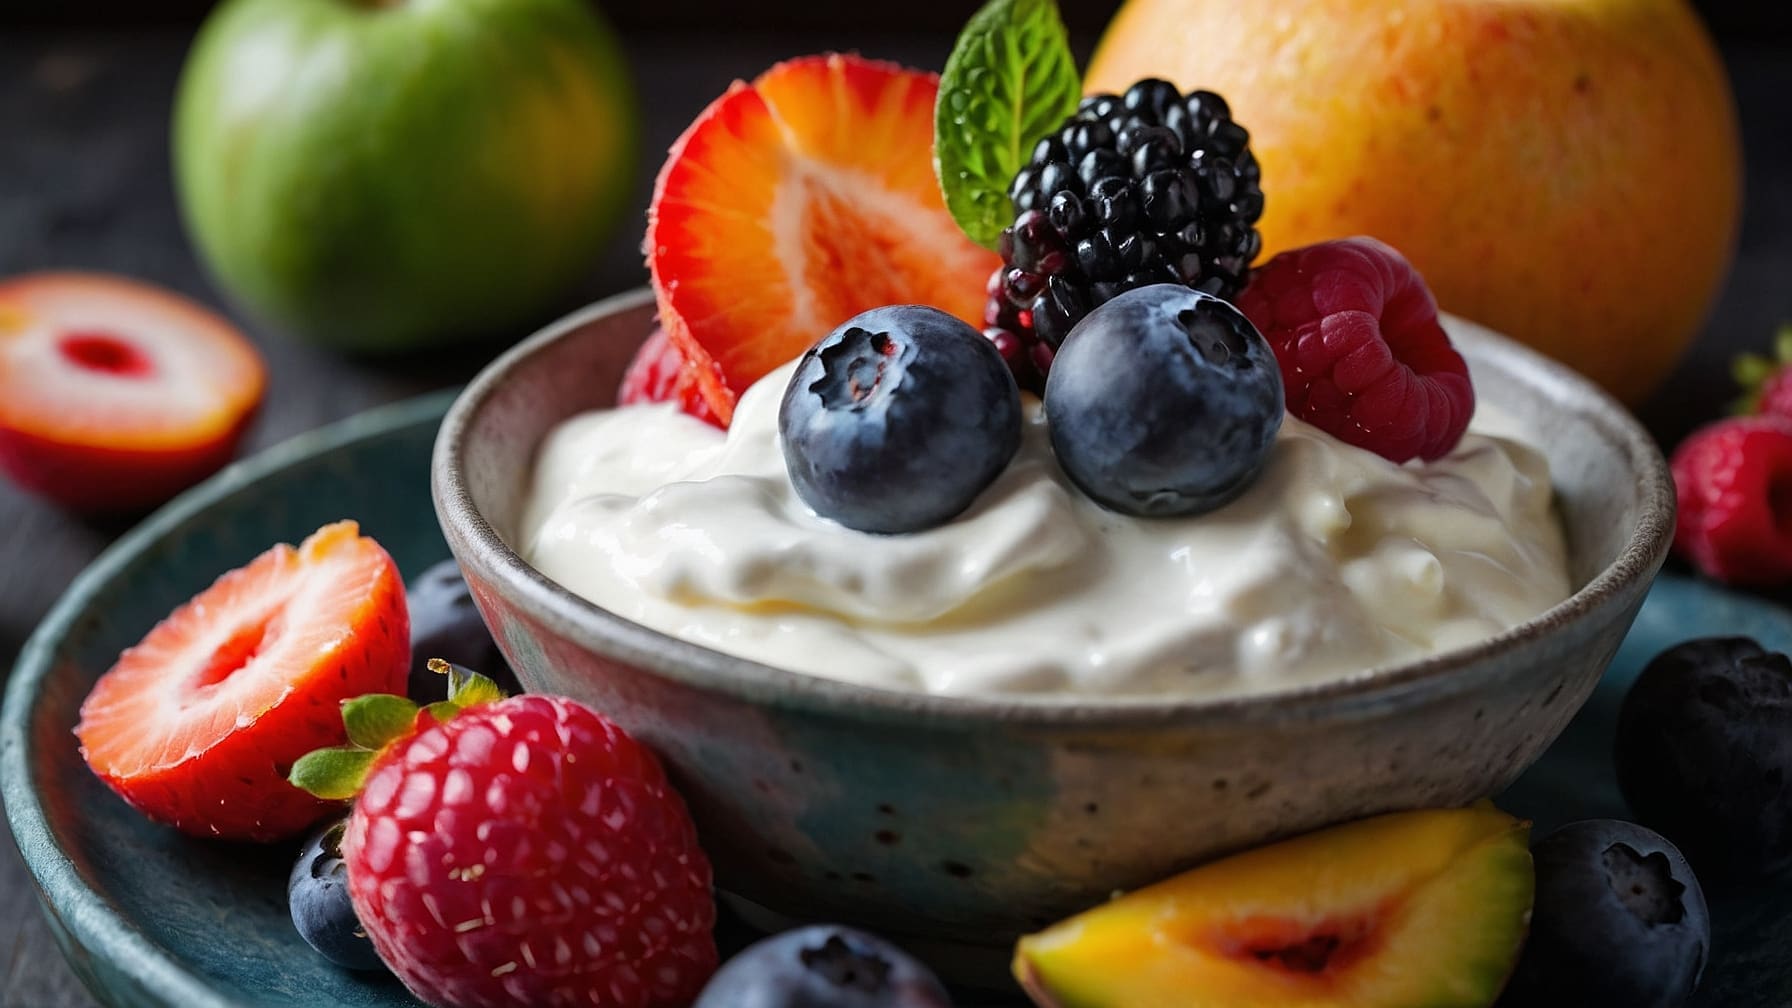 Benefici cibi fermentati migliorano salute intestinale e immunitaria. Scopri yogurt, kimchi, kombucha e altri per benessere quotidiano